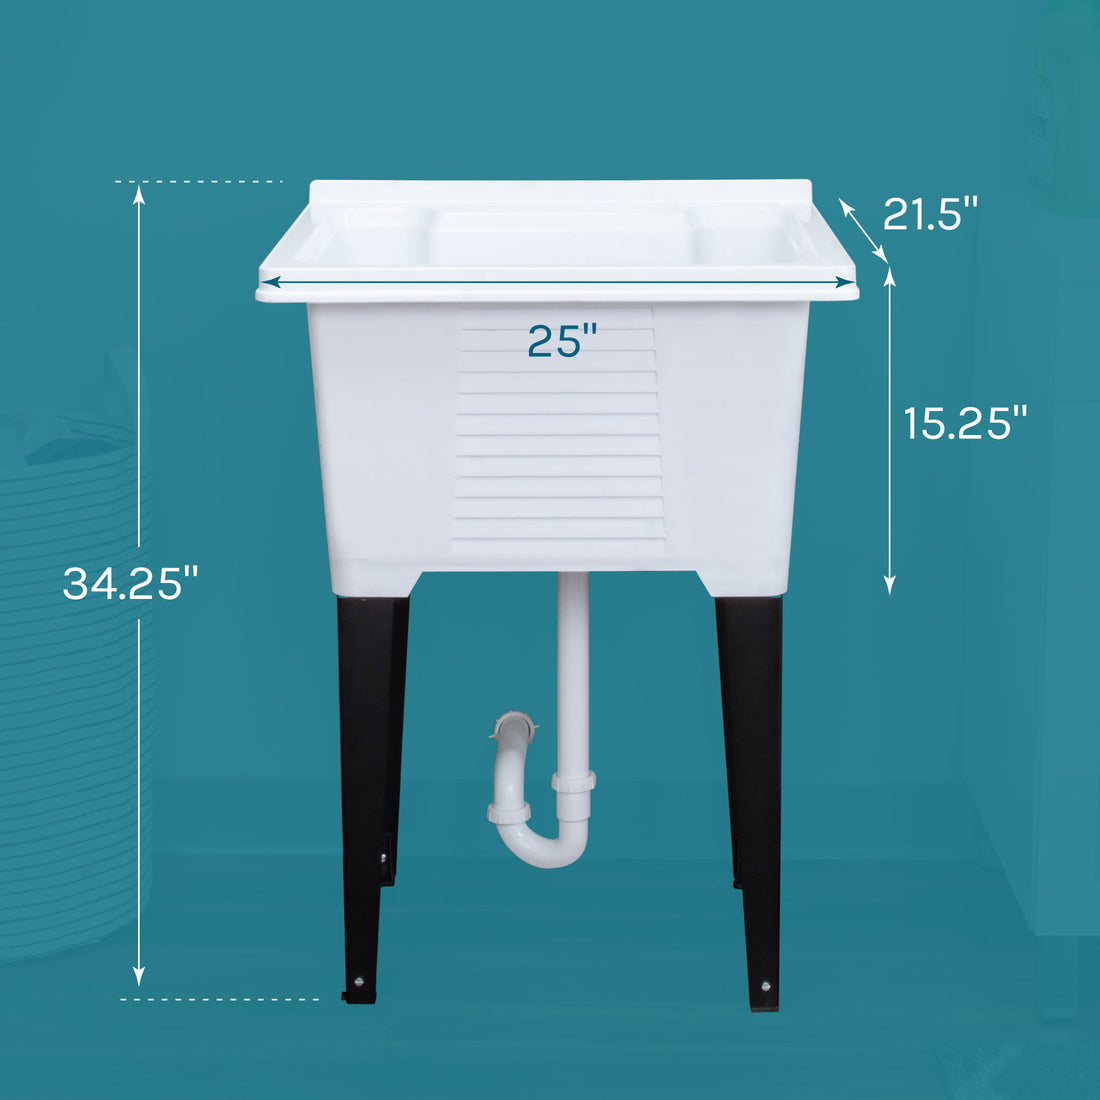 Tehila Luxe Freestanding White Utility Sink with Drainage Kit - Utility sinks vanites Tehila